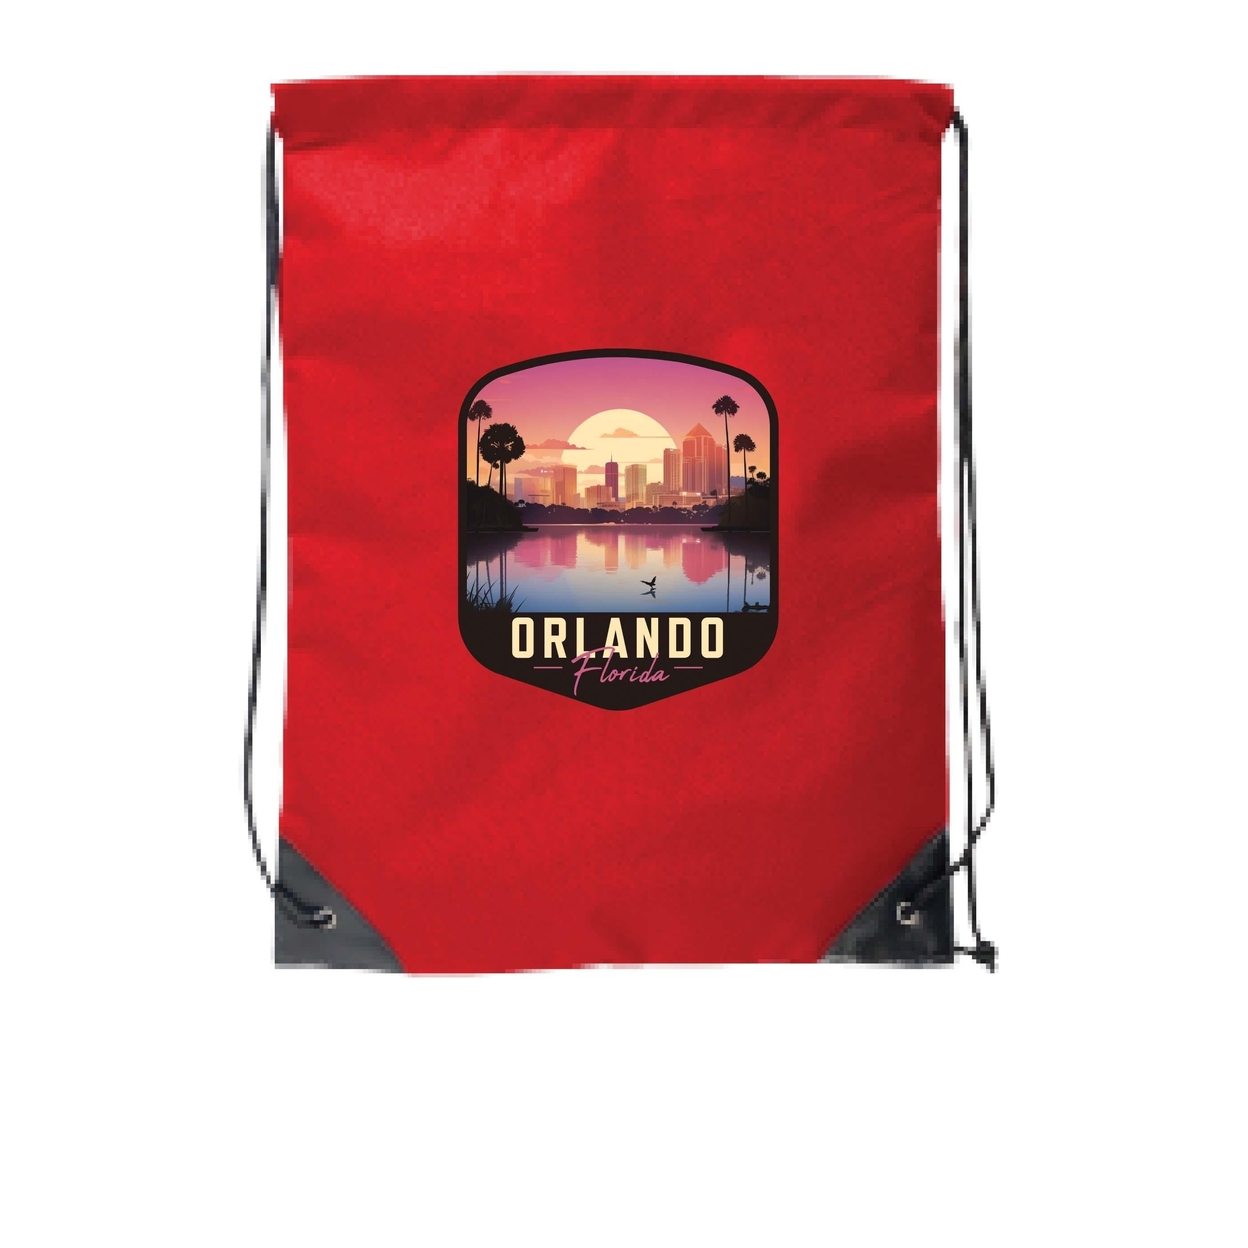 Orlando Florida A Souvenir Cinch Bag With Drawstring Backpack - Navy